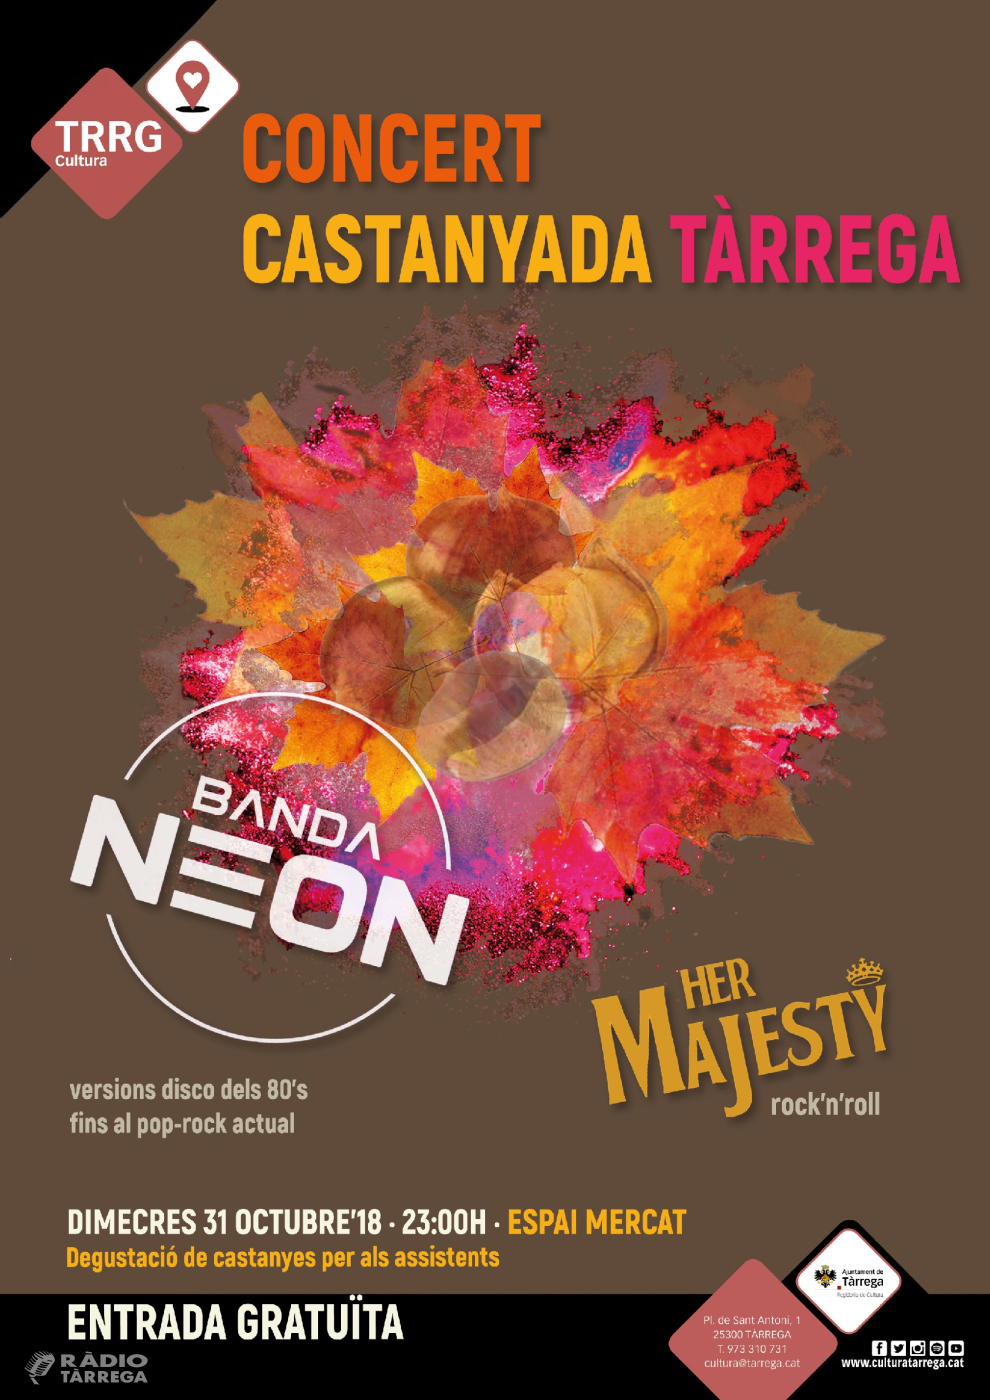 Tàrrega celebrarà la tradicional nit de la Castanyada amb un doble concert gratuït a càrrec dels grups Her Majesty i Banda Neon